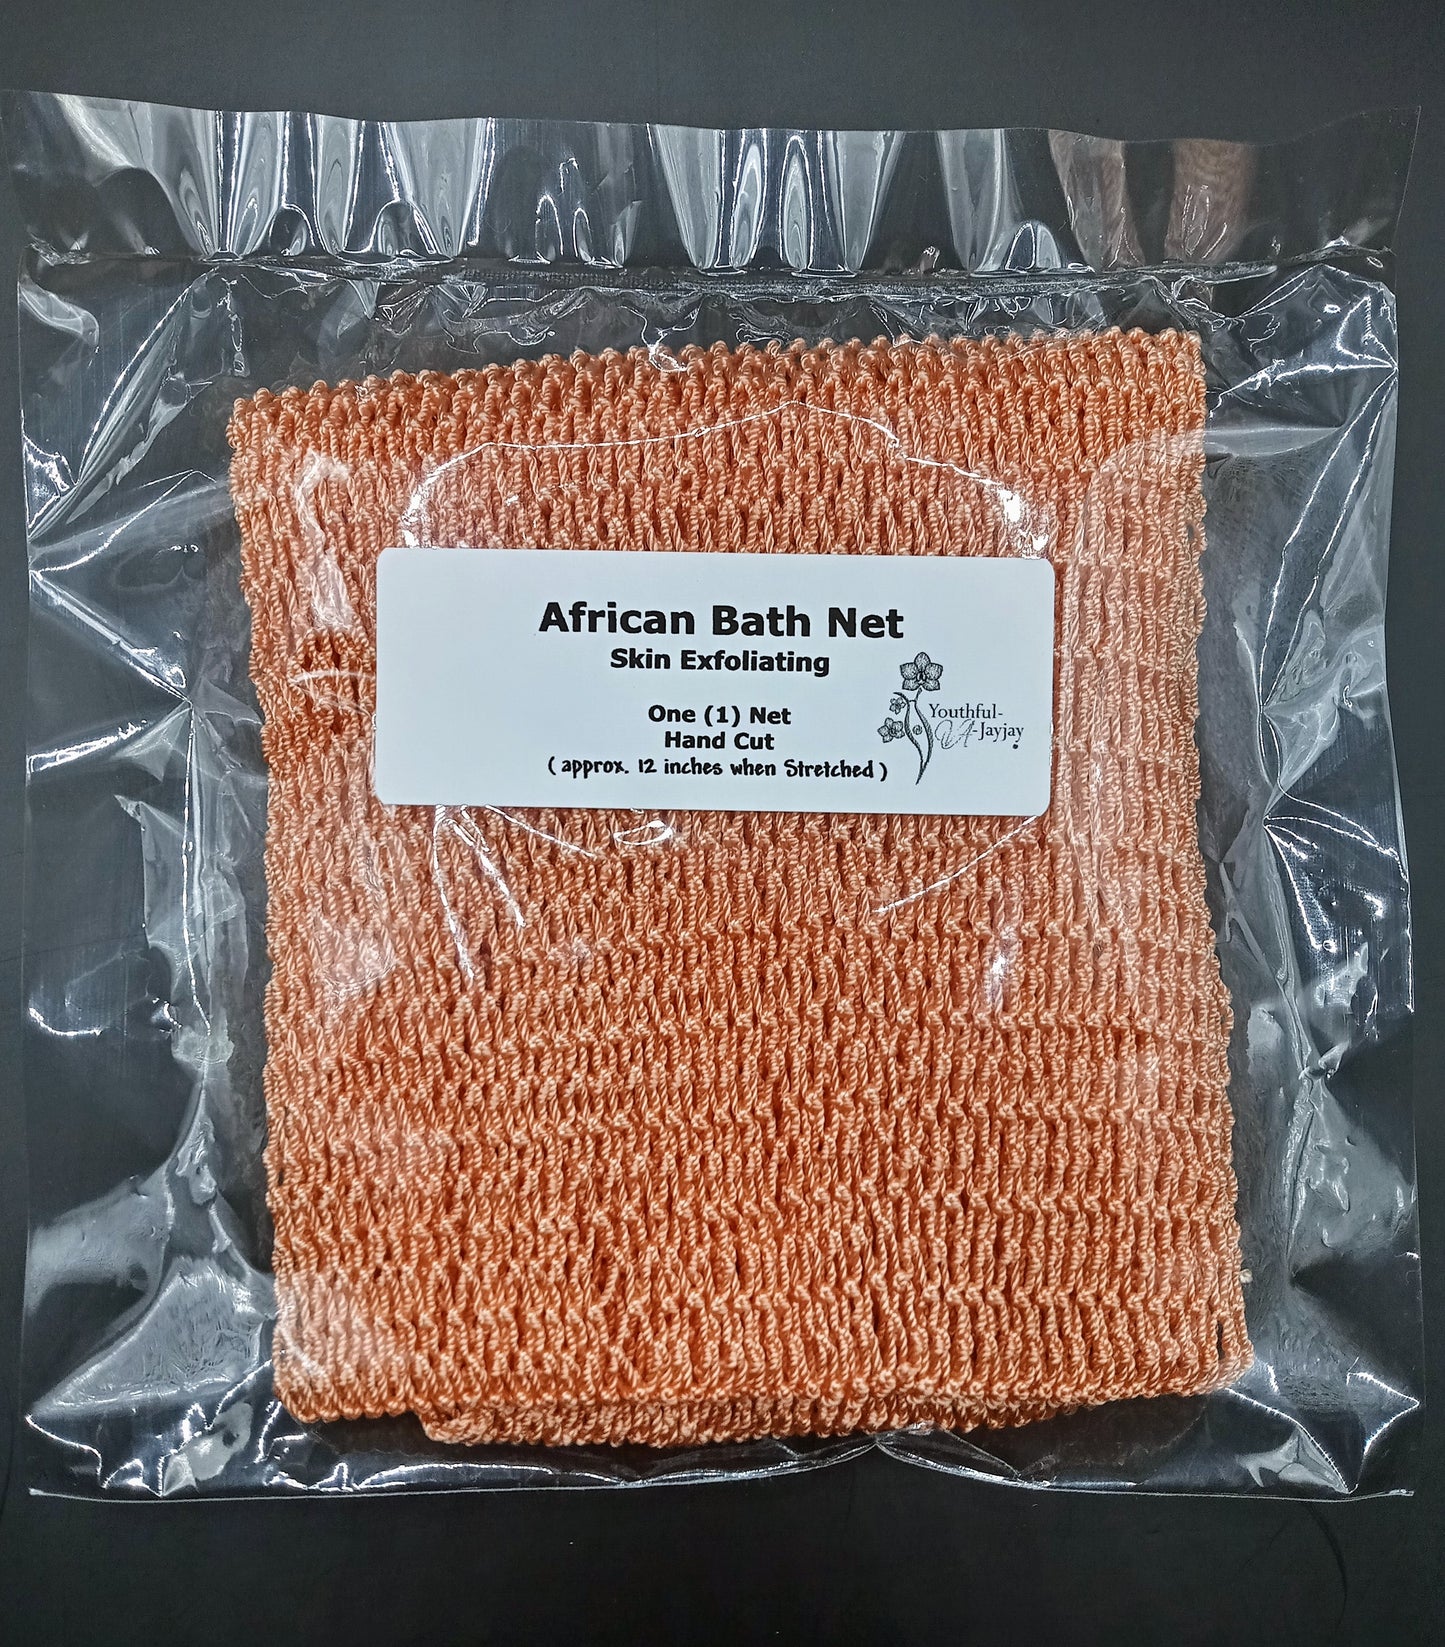 YOUTHFUL-VA-JAYJAY'S: AFRICAN BATH NET: For Body Exfoliating Hand-Cut, One (1) Bath Net